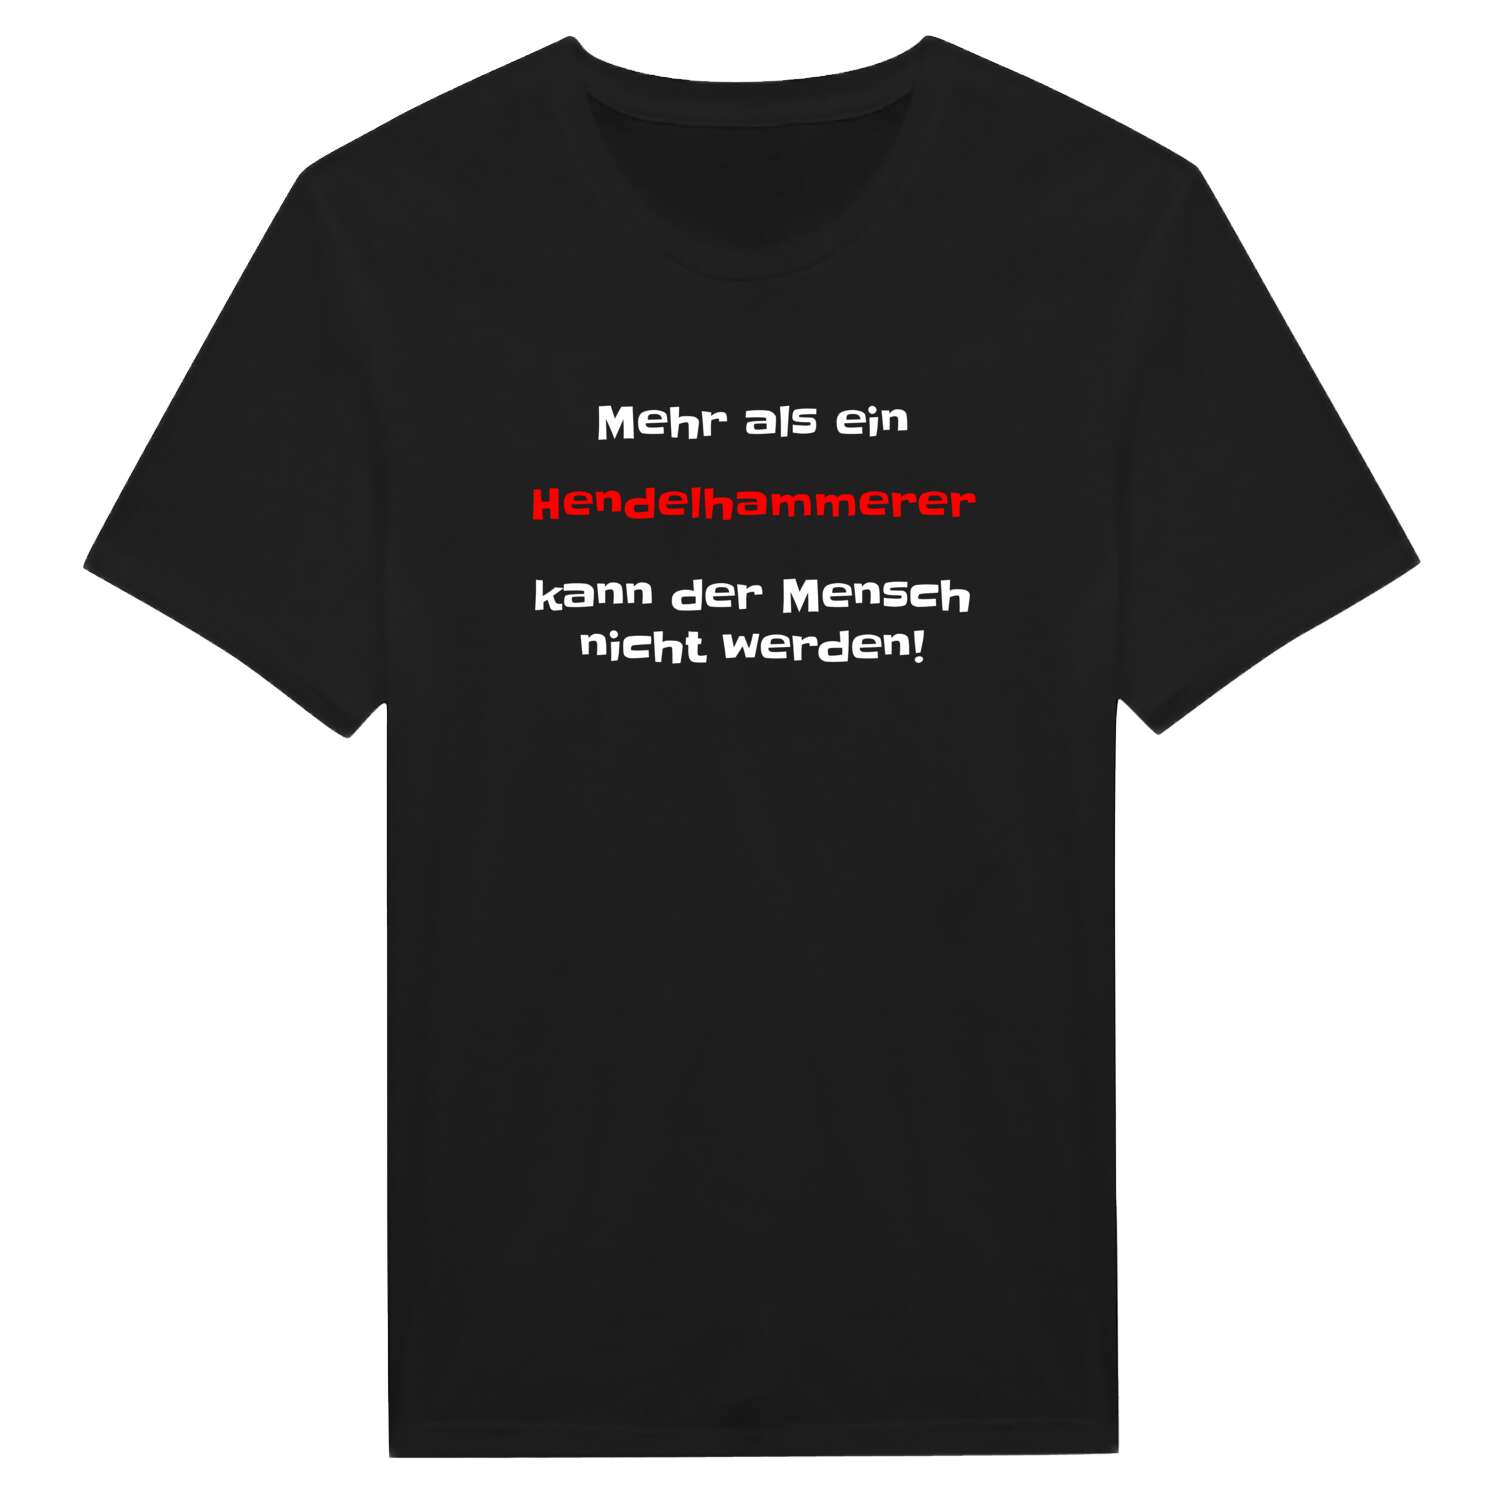 Hendelhammer T-Shirt »Mehr als ein«